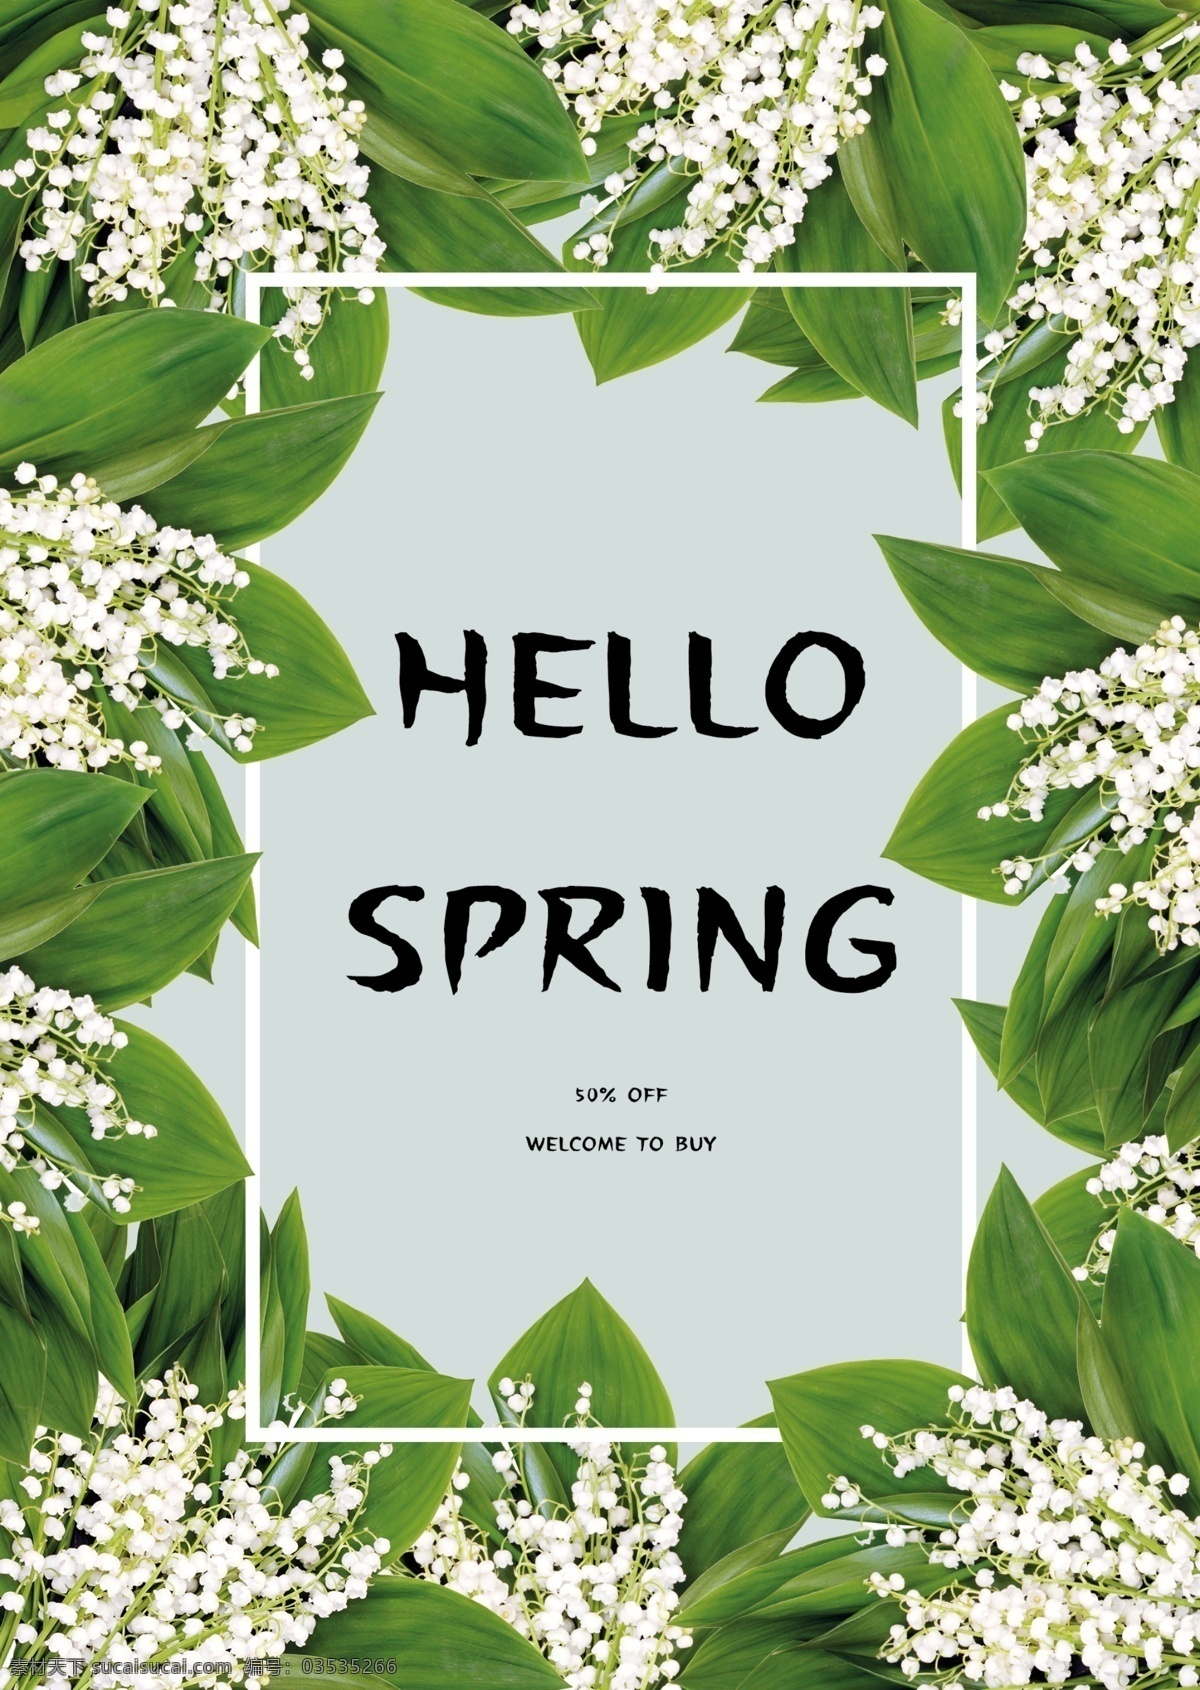 绿色 清新 满天星 春季 促销 海报 模板 鲜花 白花 白色 图框 春日 春天 英文 自然